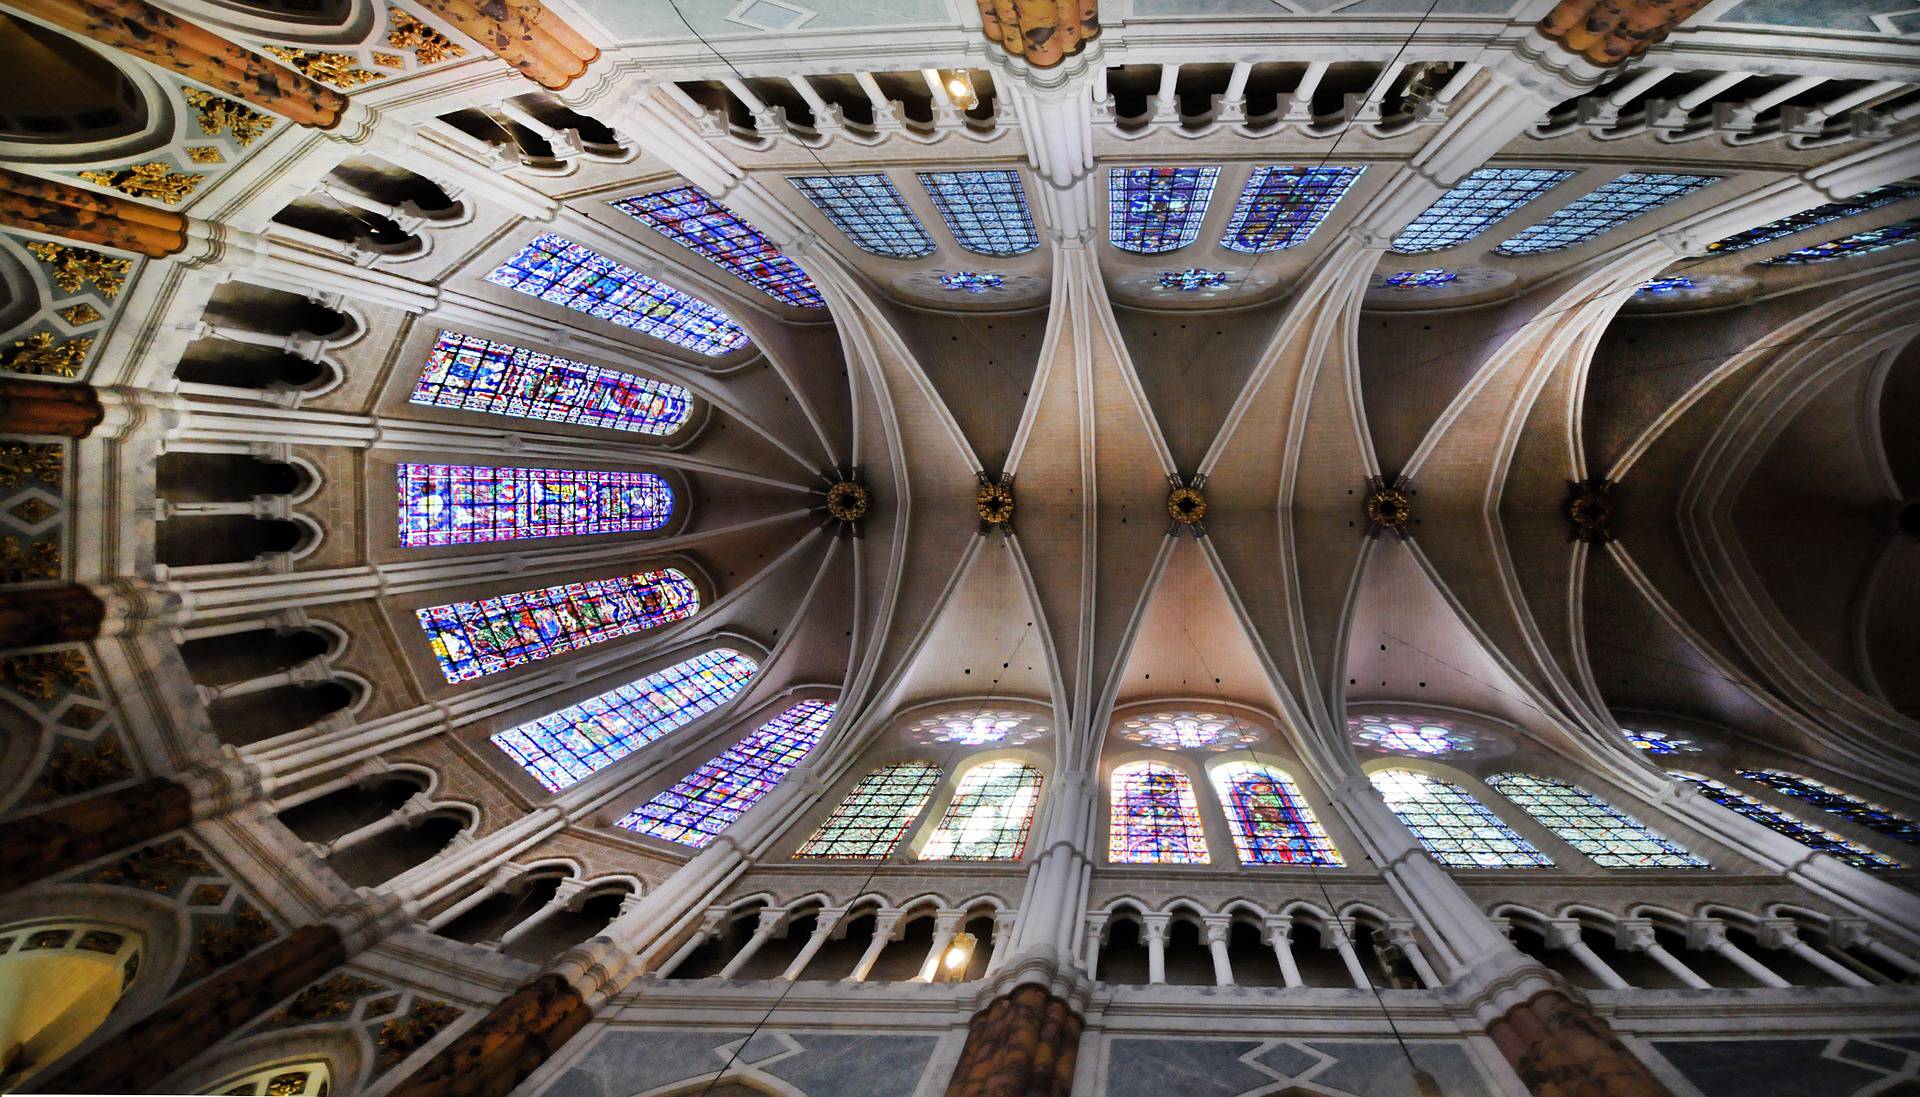 Nef de la cathédrale de Chartres